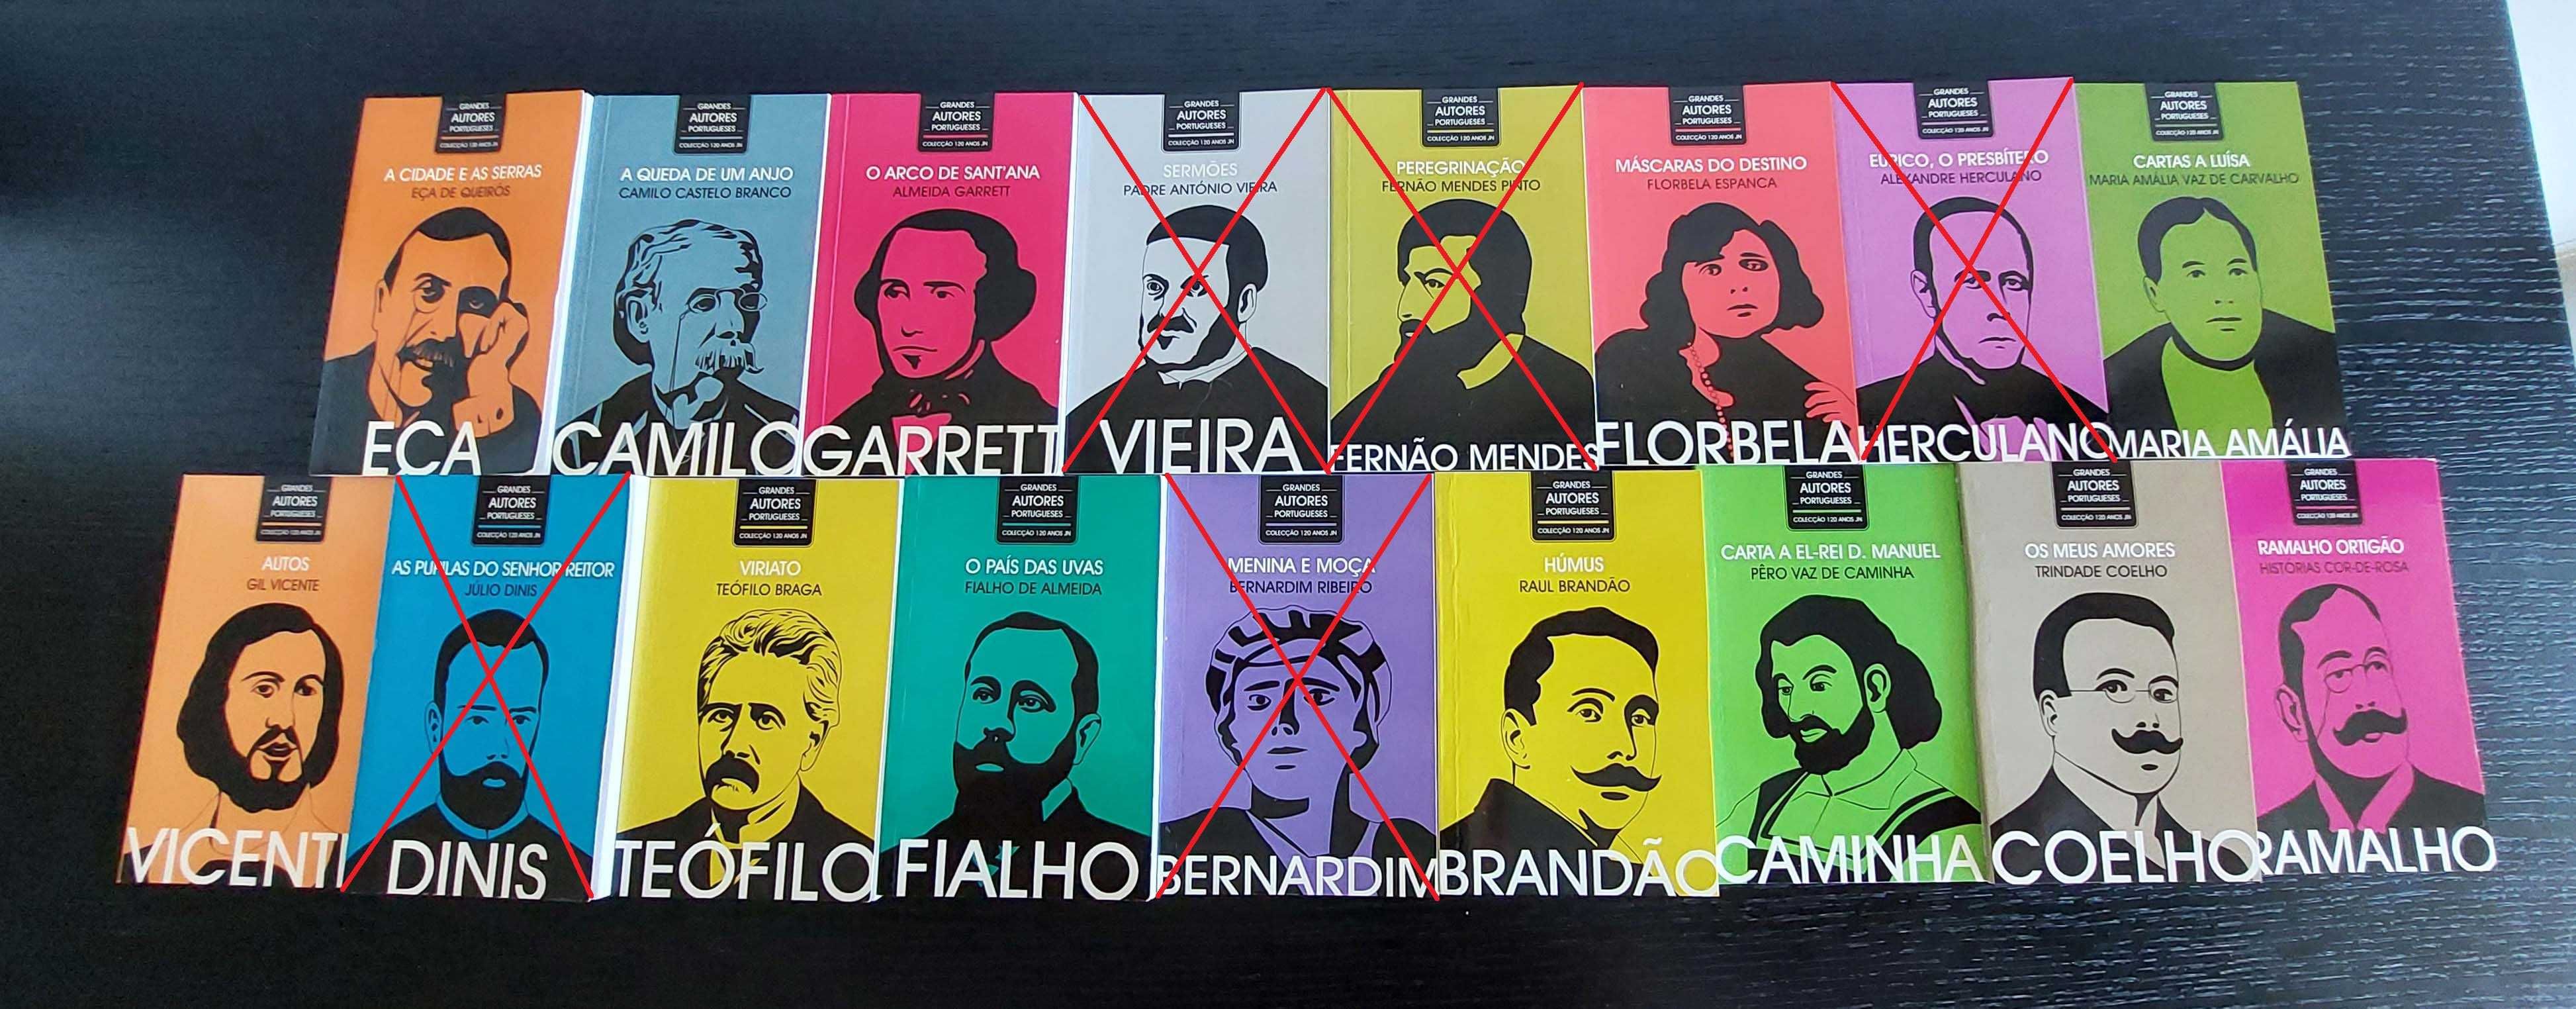 Colecção completa "Grandes Autores Portugueses" do Jornal de Notícias